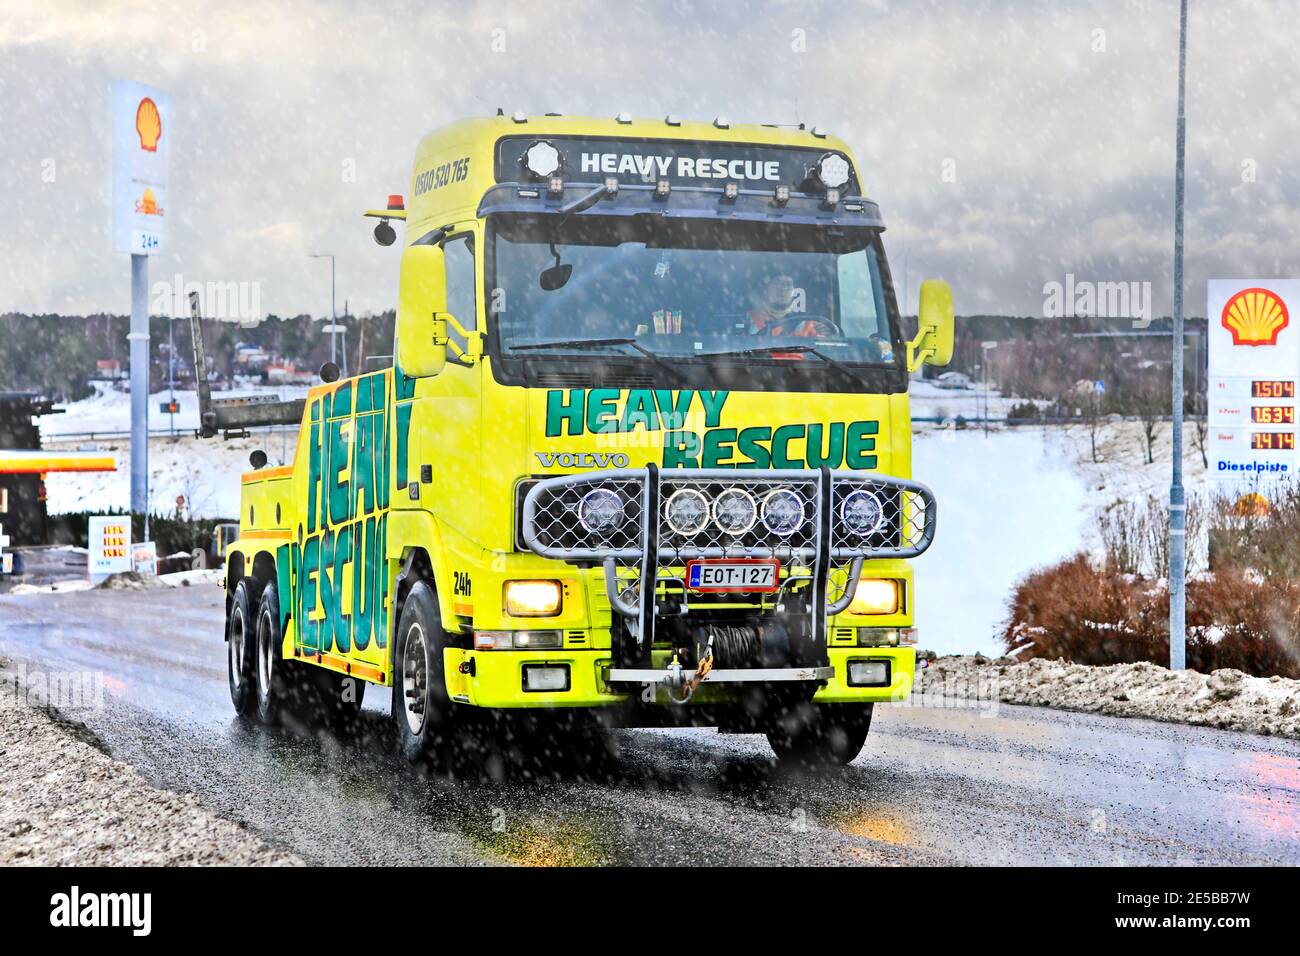 Volvo vehículo de recuperación de servicio pesado de Heavy Rescue Europe Oy, utilizado para remolcar semi camiones que salen de parada de camiones en Nevada. Salo, Finlandia. 23 de enero de 2021 Foto de stock